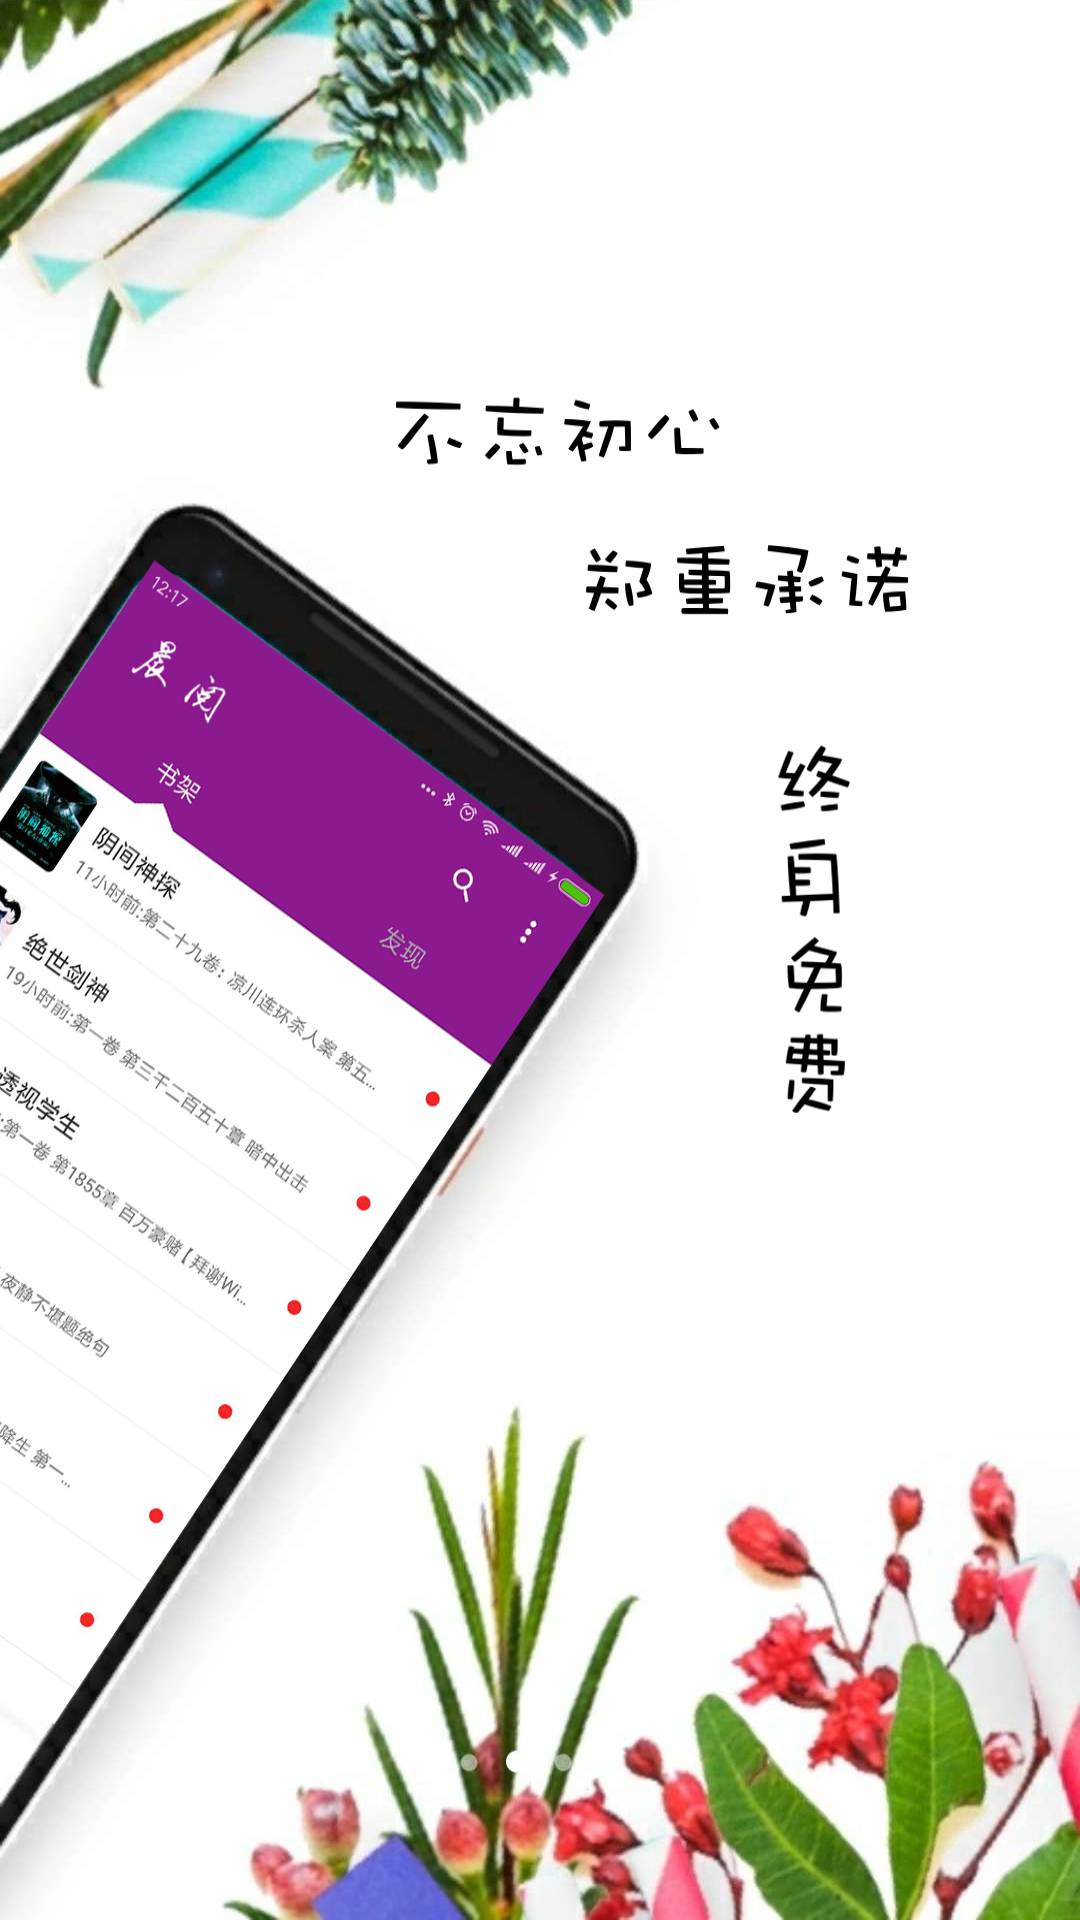 晨阅免费小说成都泉州app开发